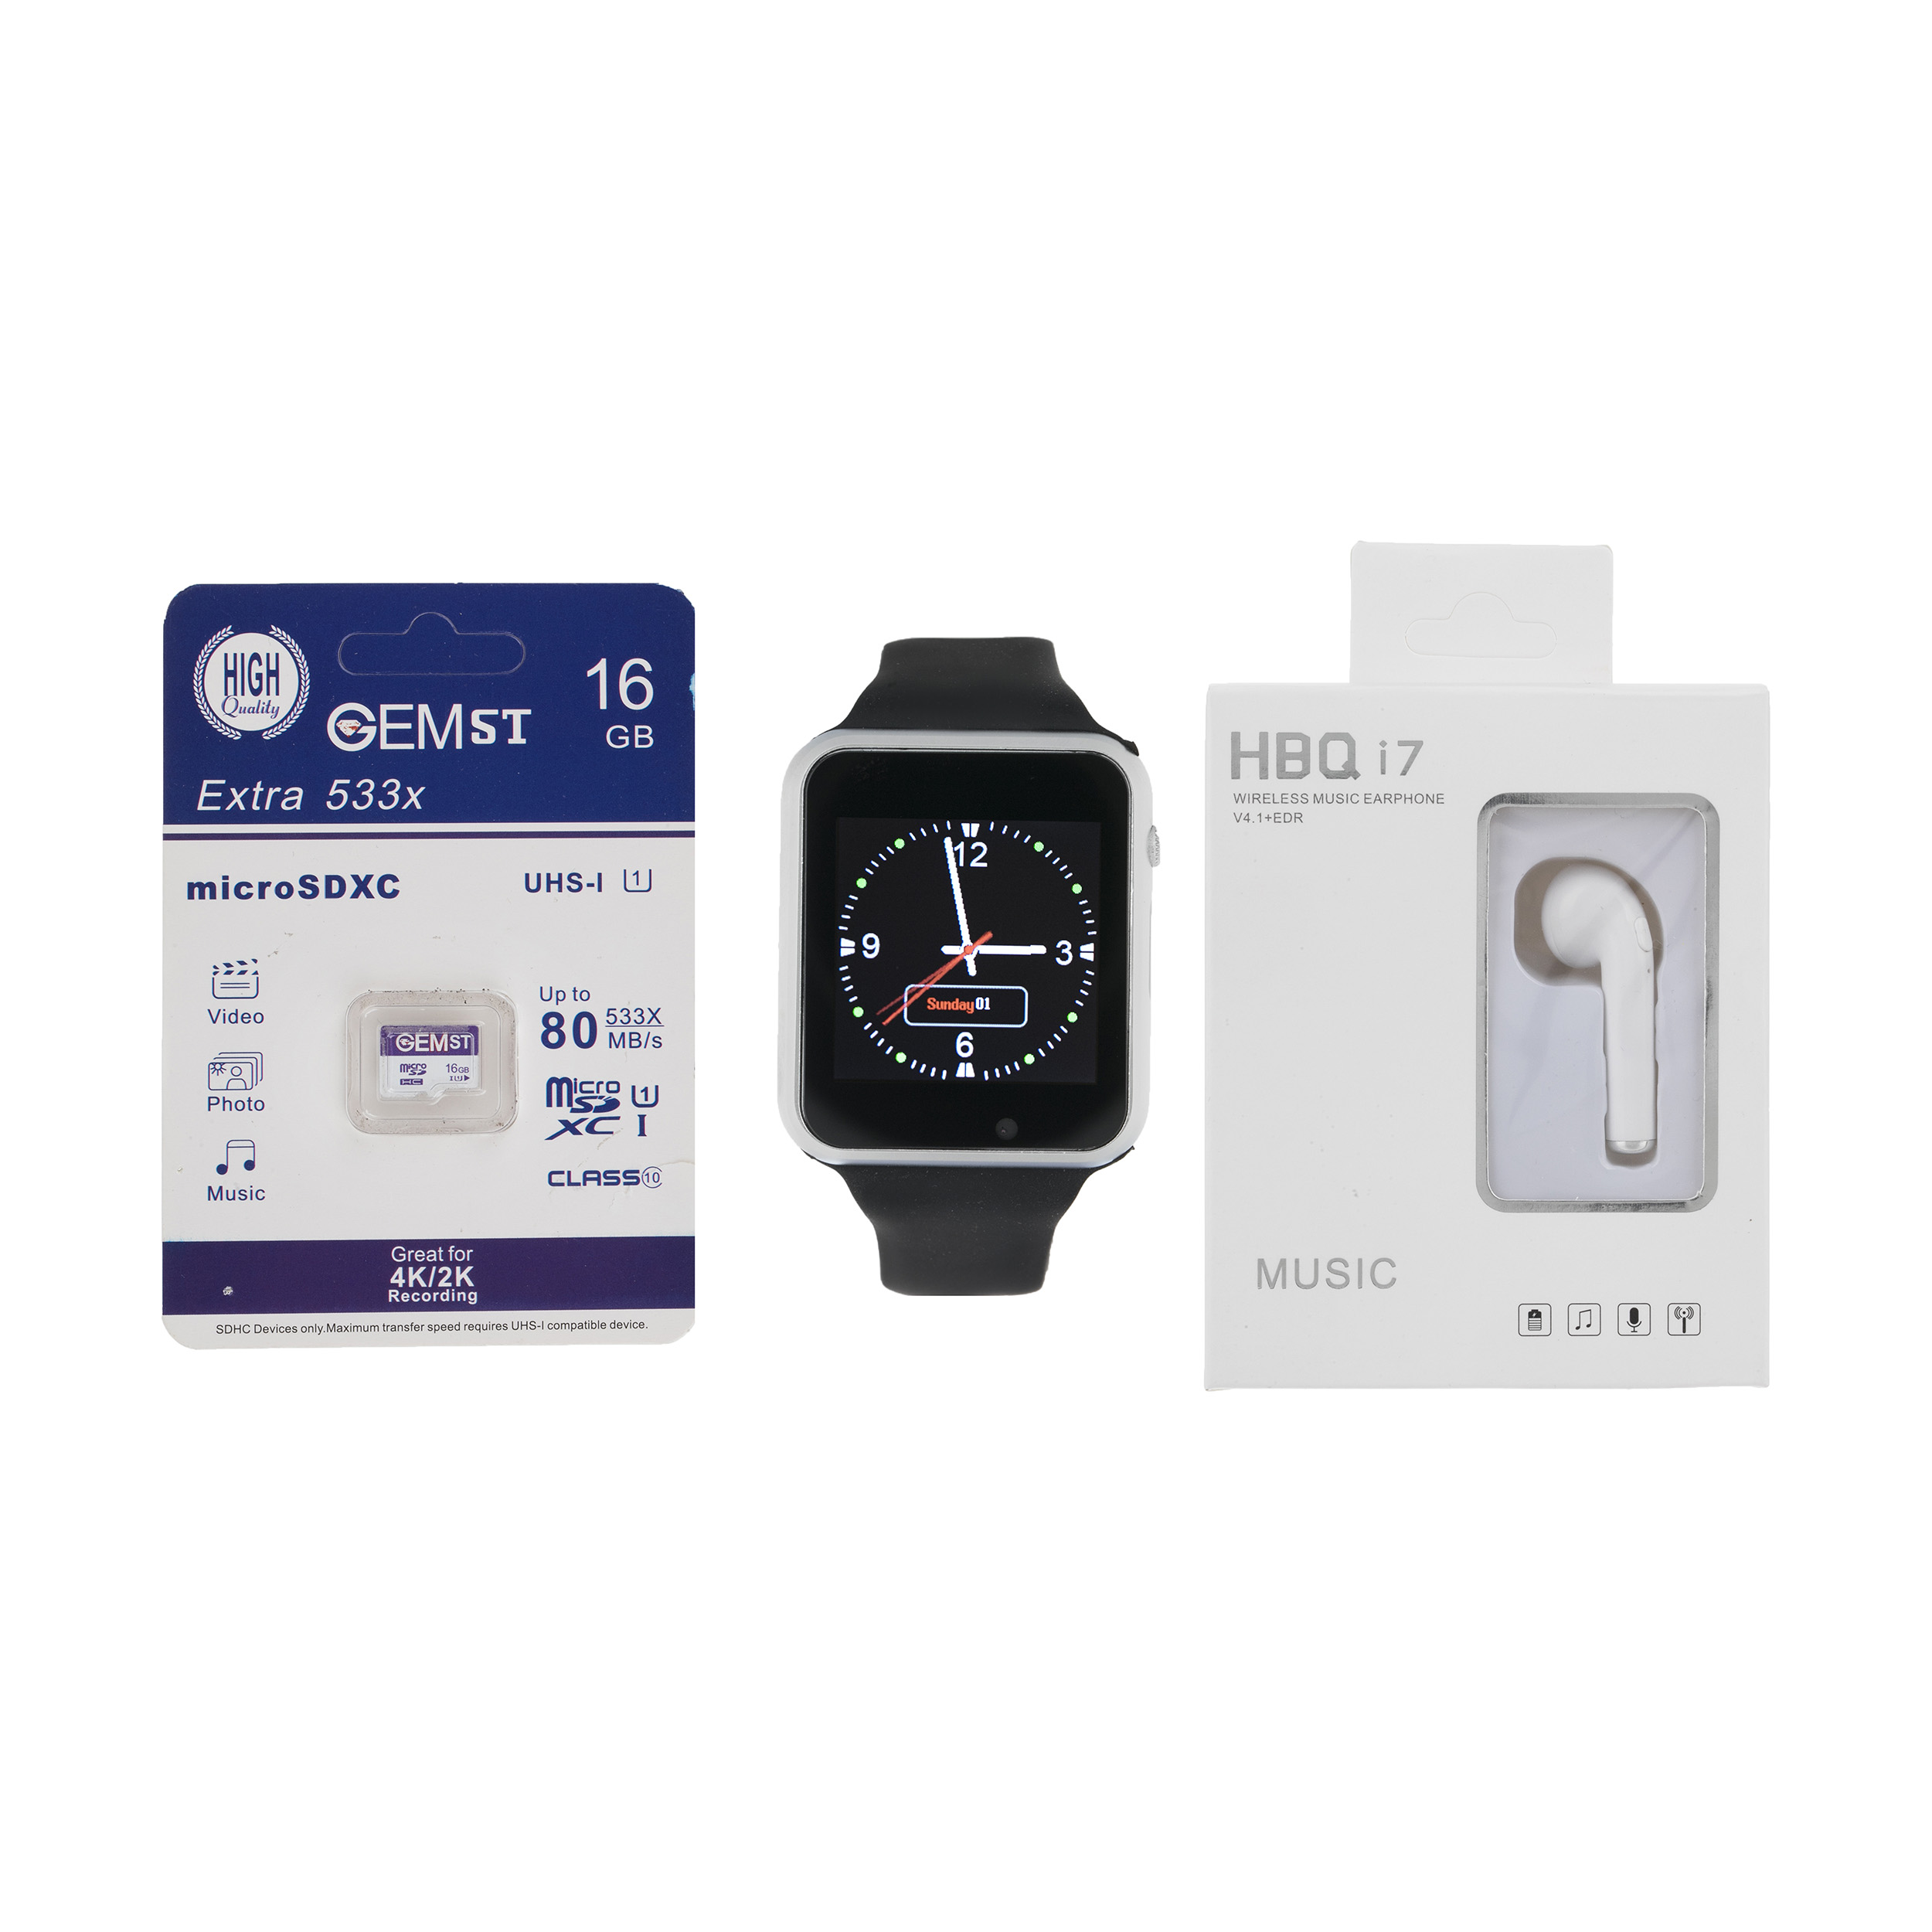 ساعت هوشمند جی-تب مدل W101 Hero به همراه هندزفری اچ بی کیو مدل i7 و کارت حافظه 16 گیگابایتی